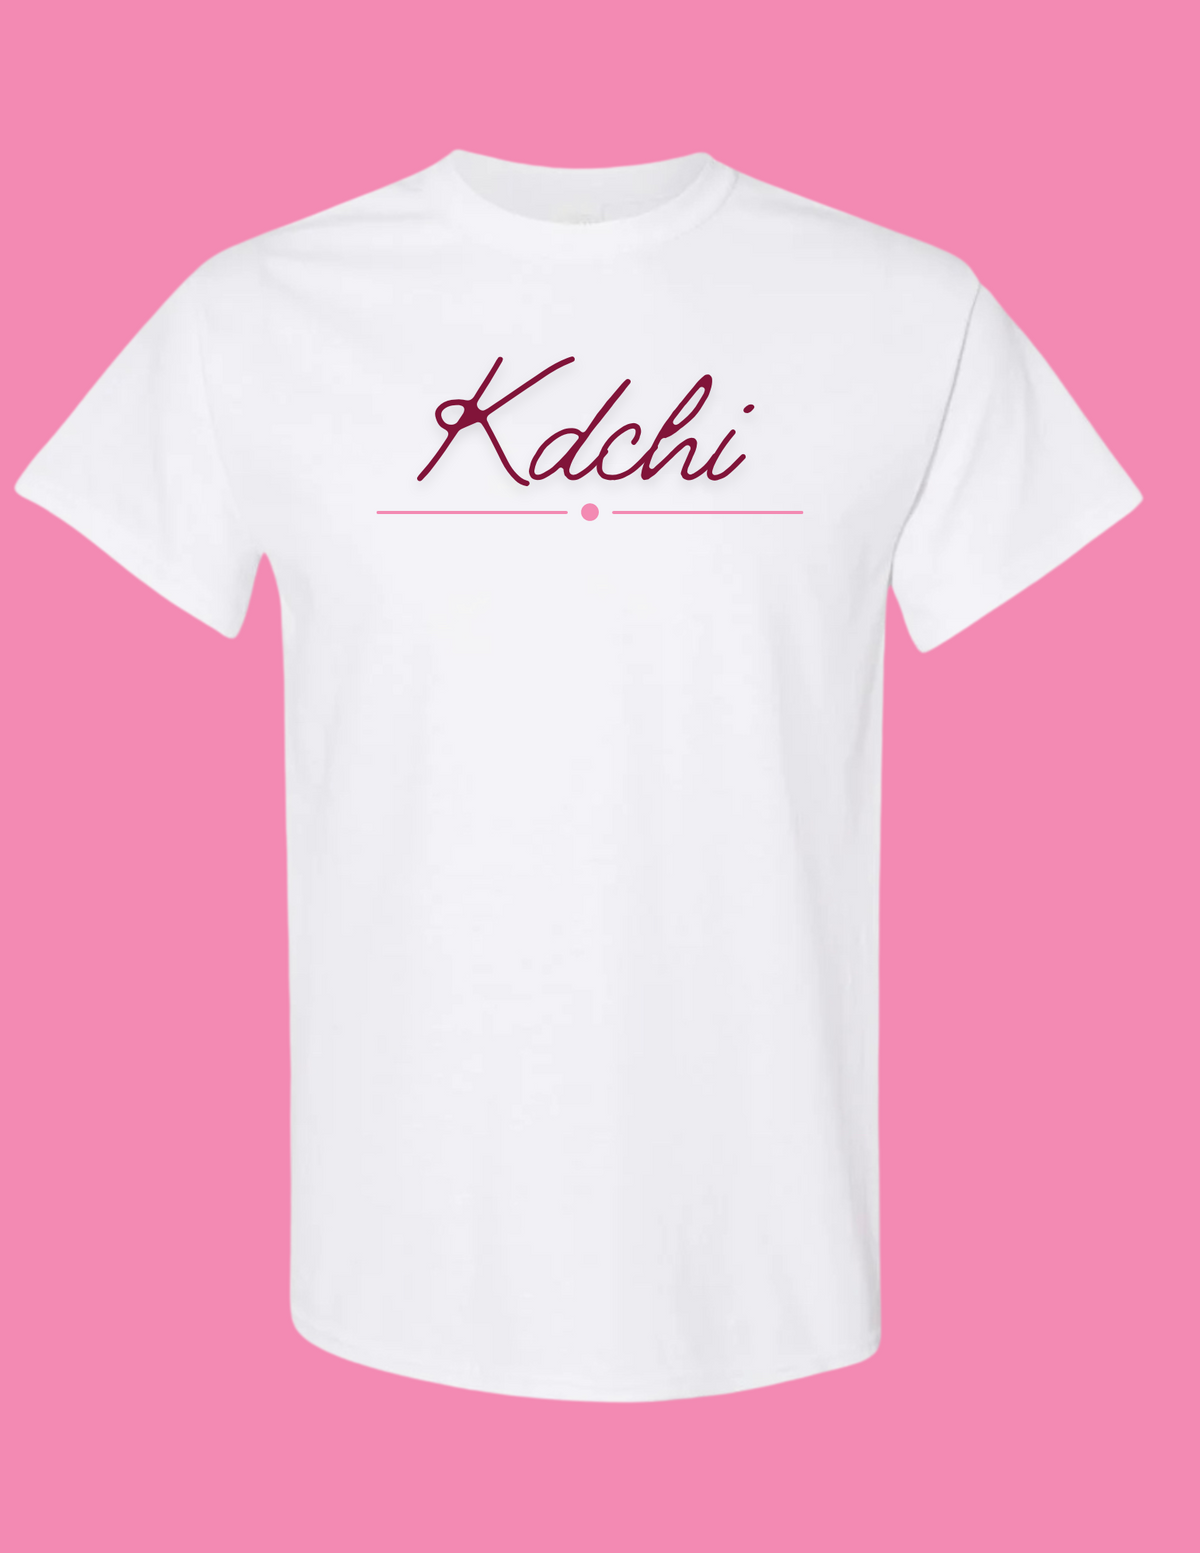 Kdchi Circle T Shirt